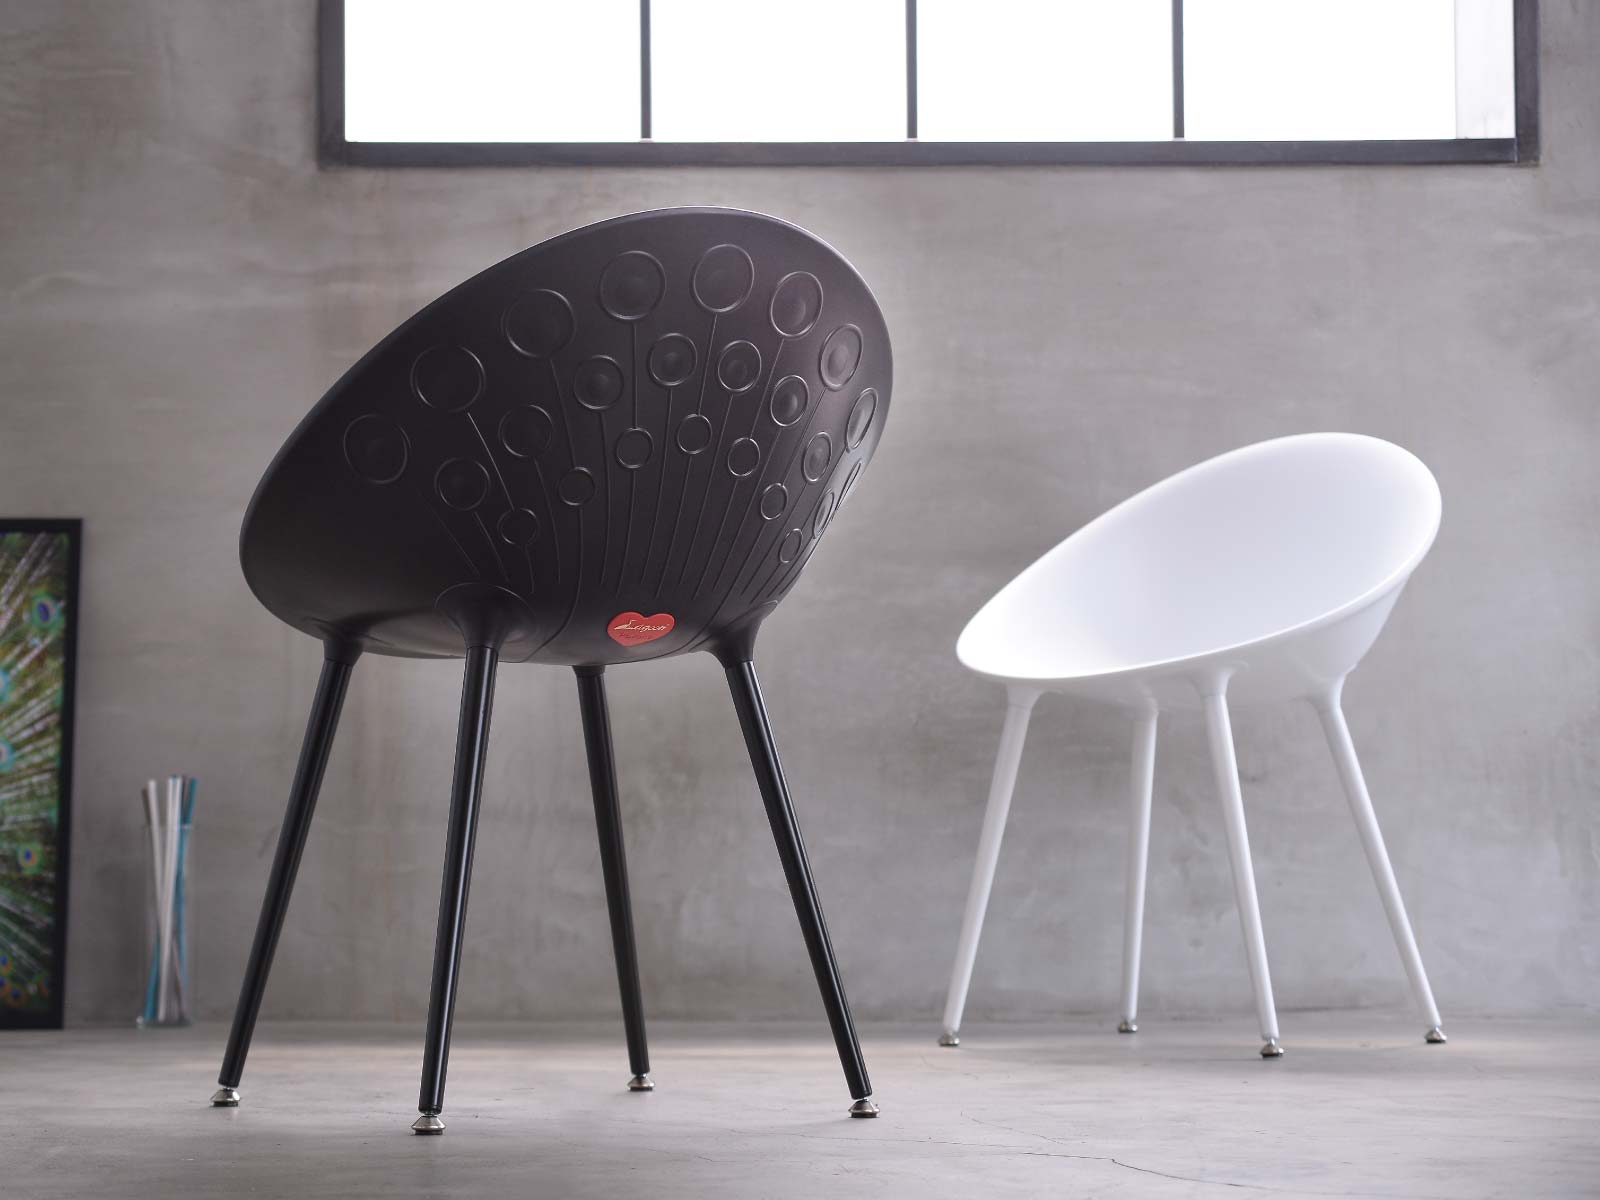 7056-PT1 Pavone 孔雀椅 - Lagoon 創意家具&生活家電 戶外家具的專家，顏色繽紛富設計感 室內/戶外都適合使用。